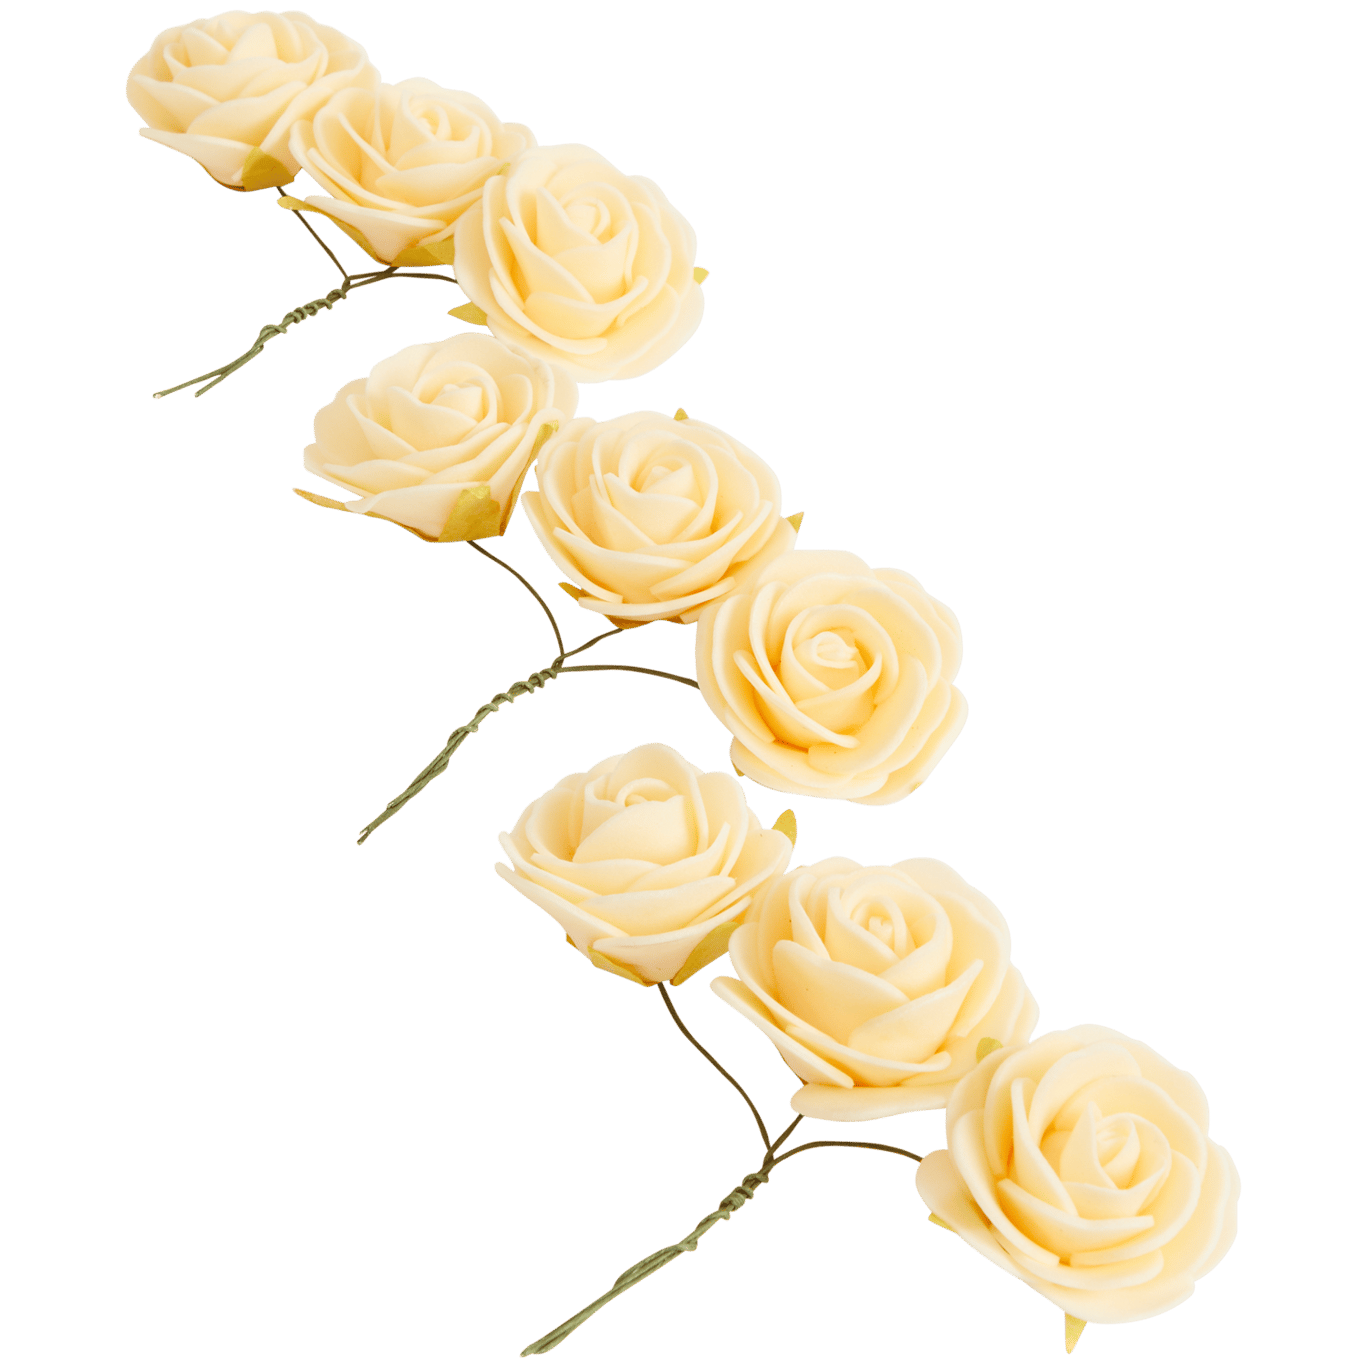 Rosas decorativas Home Accents